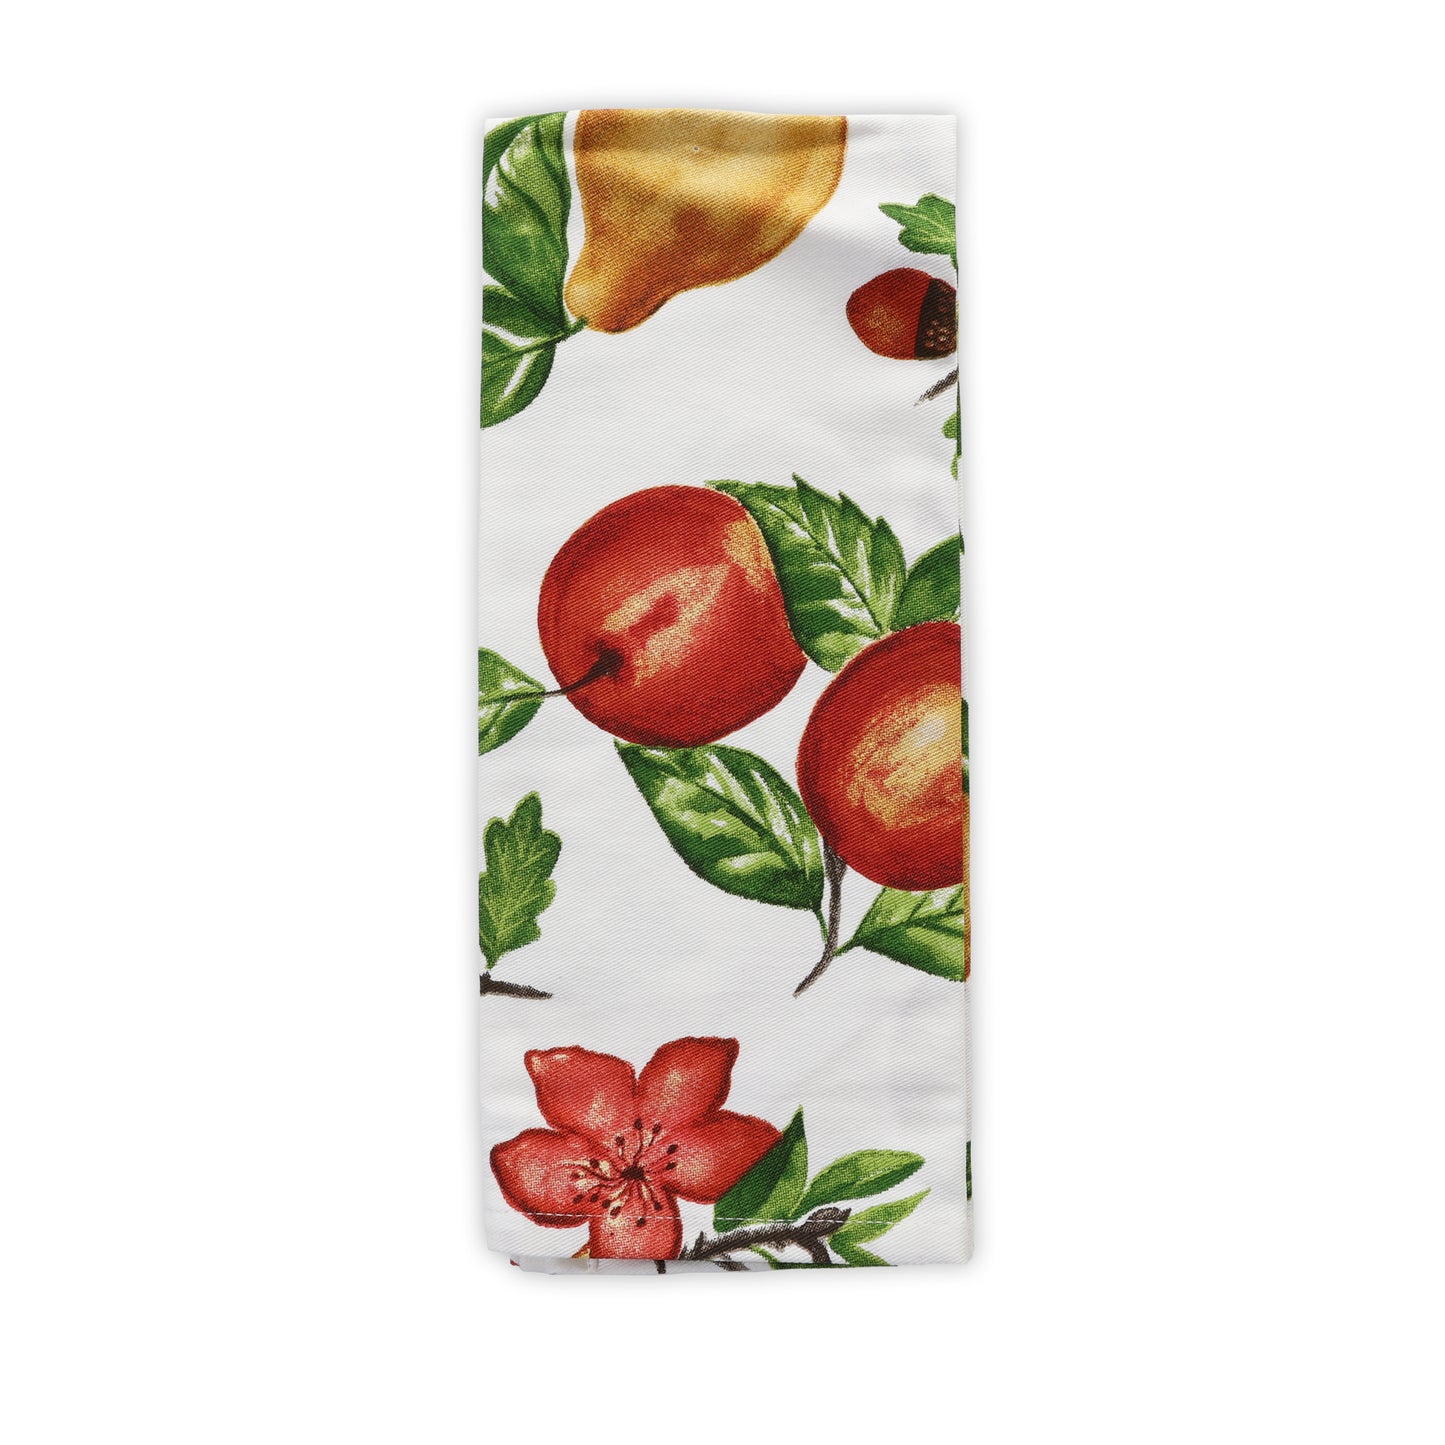 15X25in 100% Cotton Premium Kitchen Towel - Apples